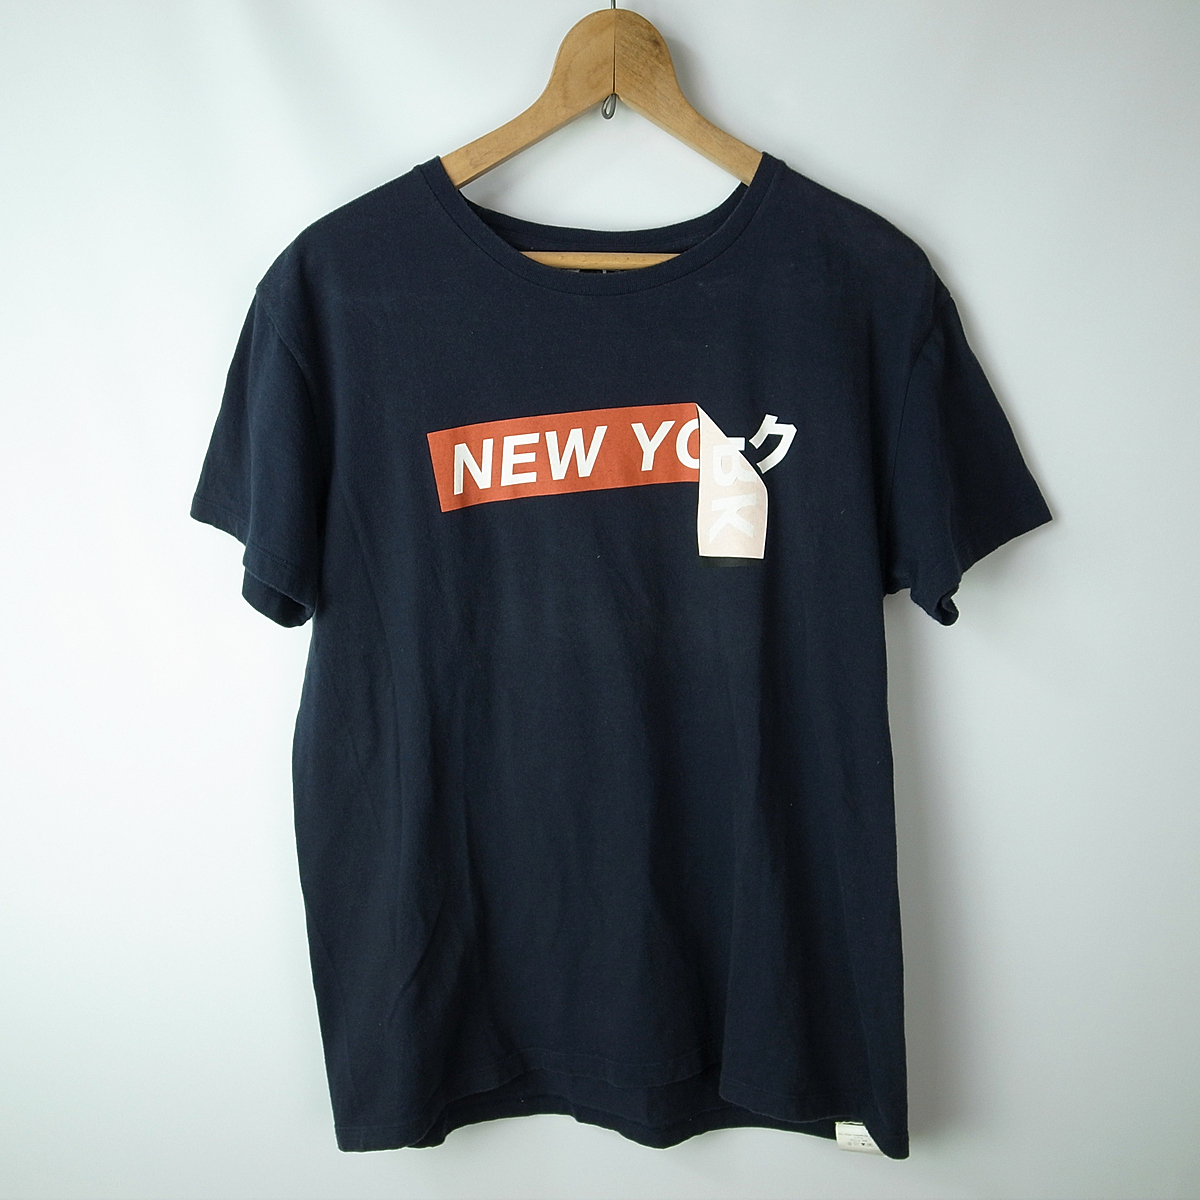 日本短袖,T-shirt,男性时尚,流行服饰、包包代购MYDAY买对网